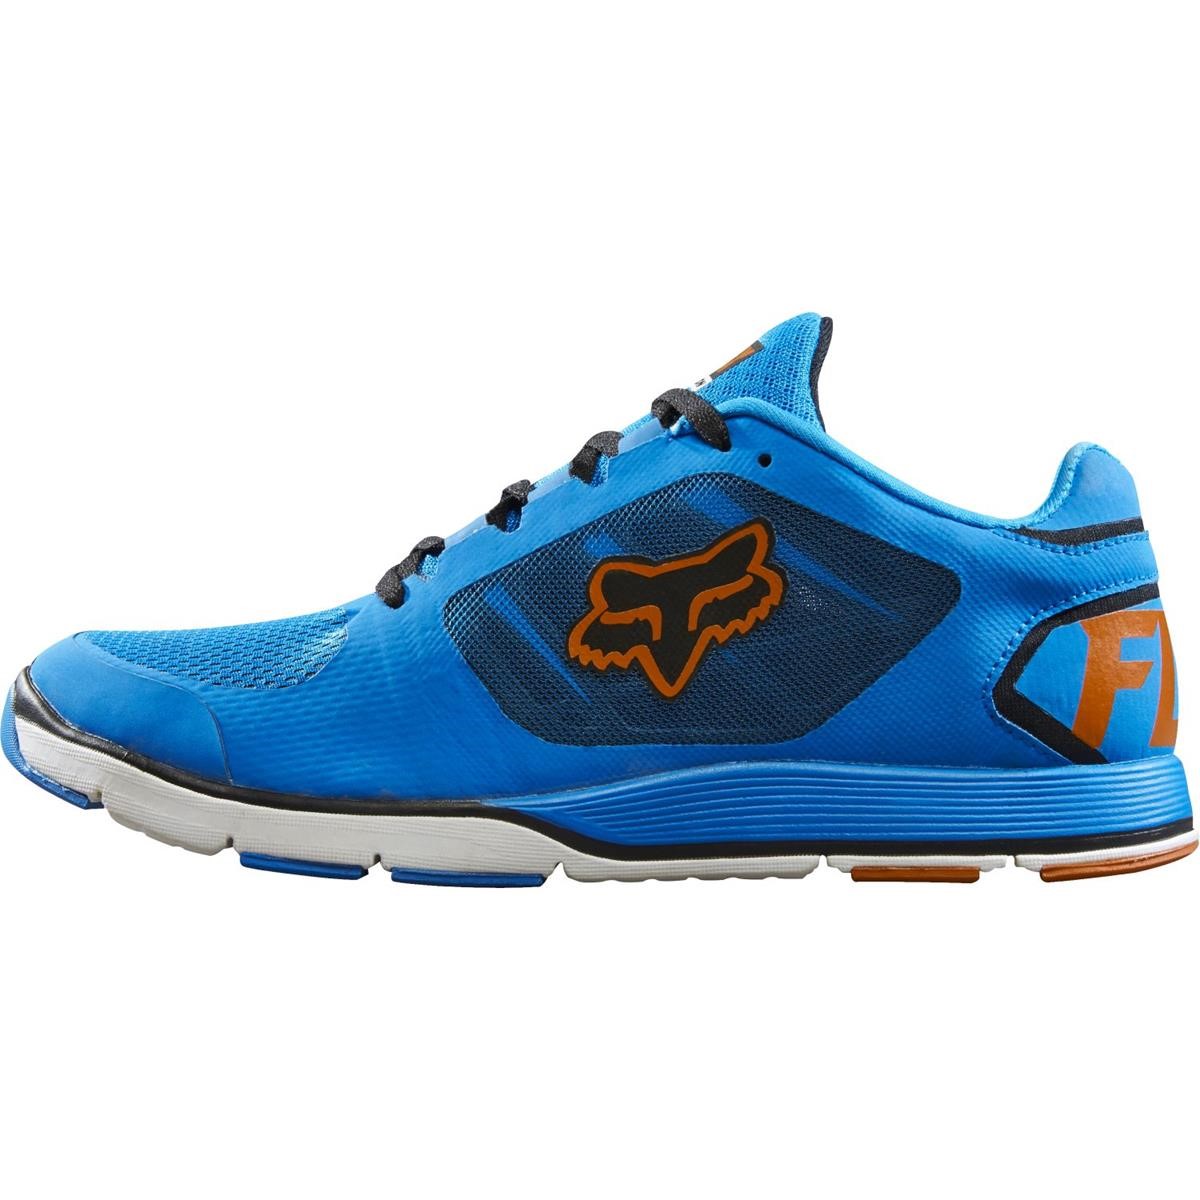 Fox Chaussures Motion Evo Orange/Blue